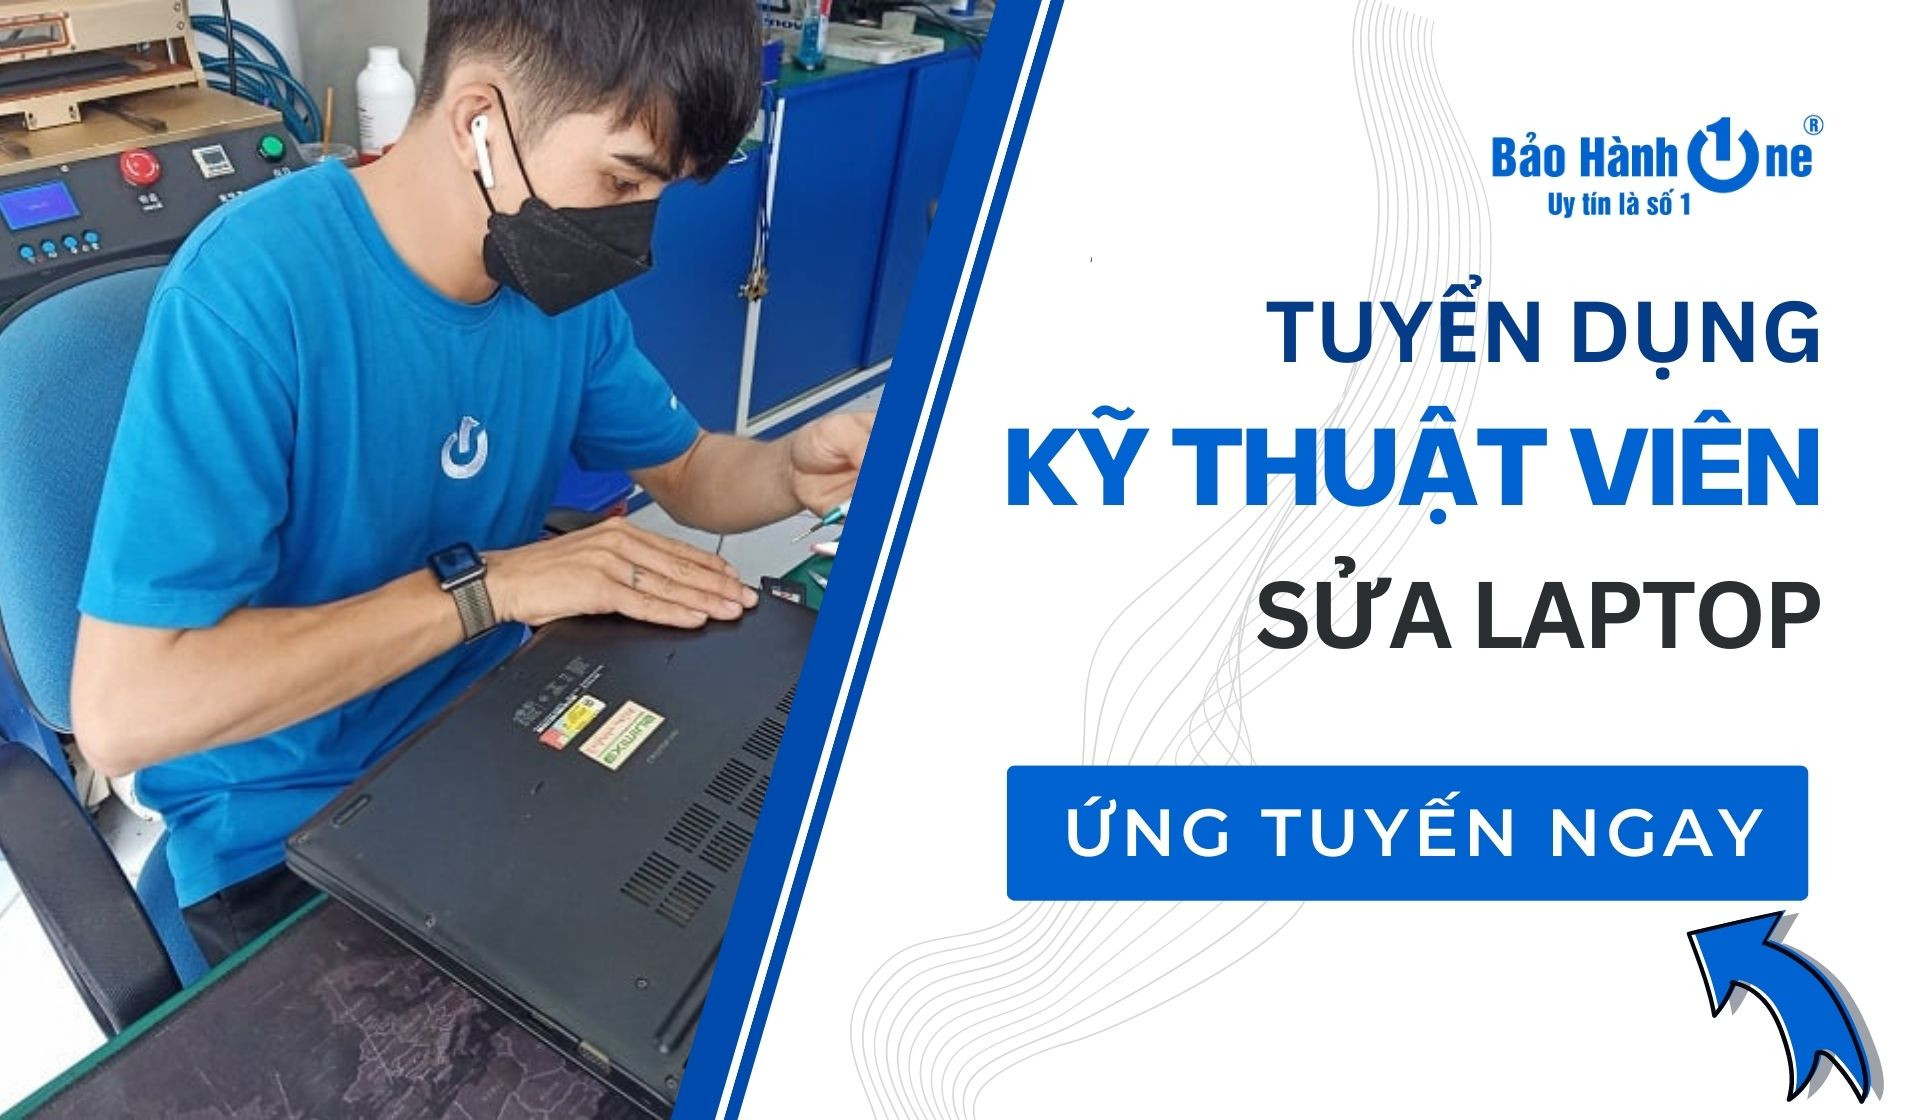 Tuyển dụng Kĩ Thuật Viên Sửa Chữa Laptop lương cao tại Quận 1, Quận 10, Q. Tân Phú